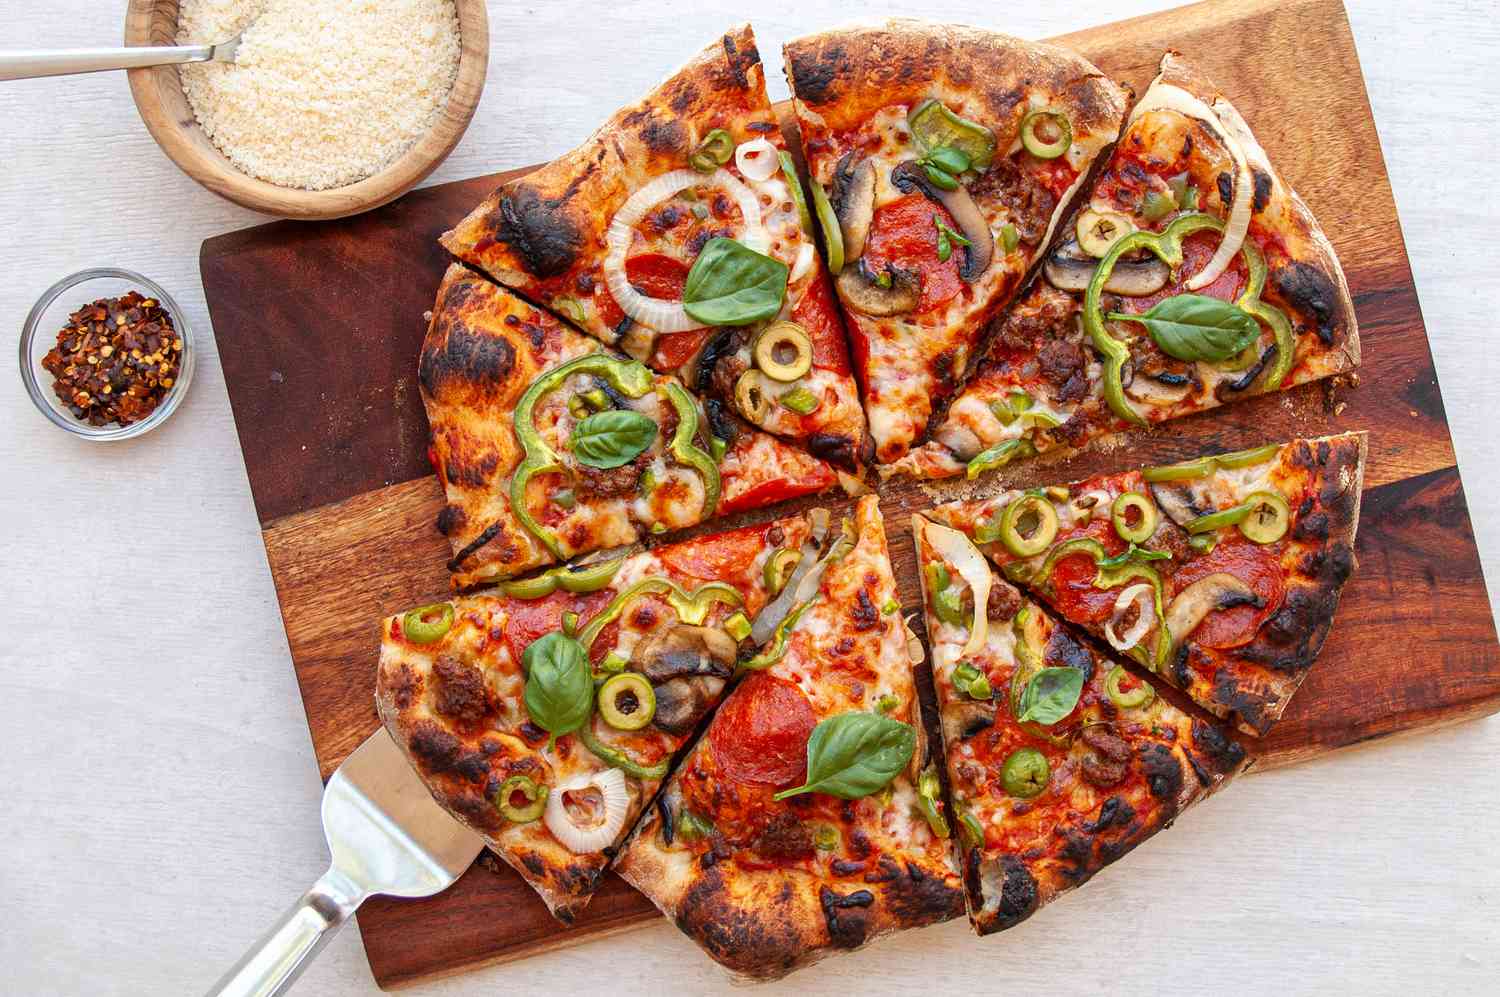 Son olarak, pizzanın üzerine ne koyarsın?